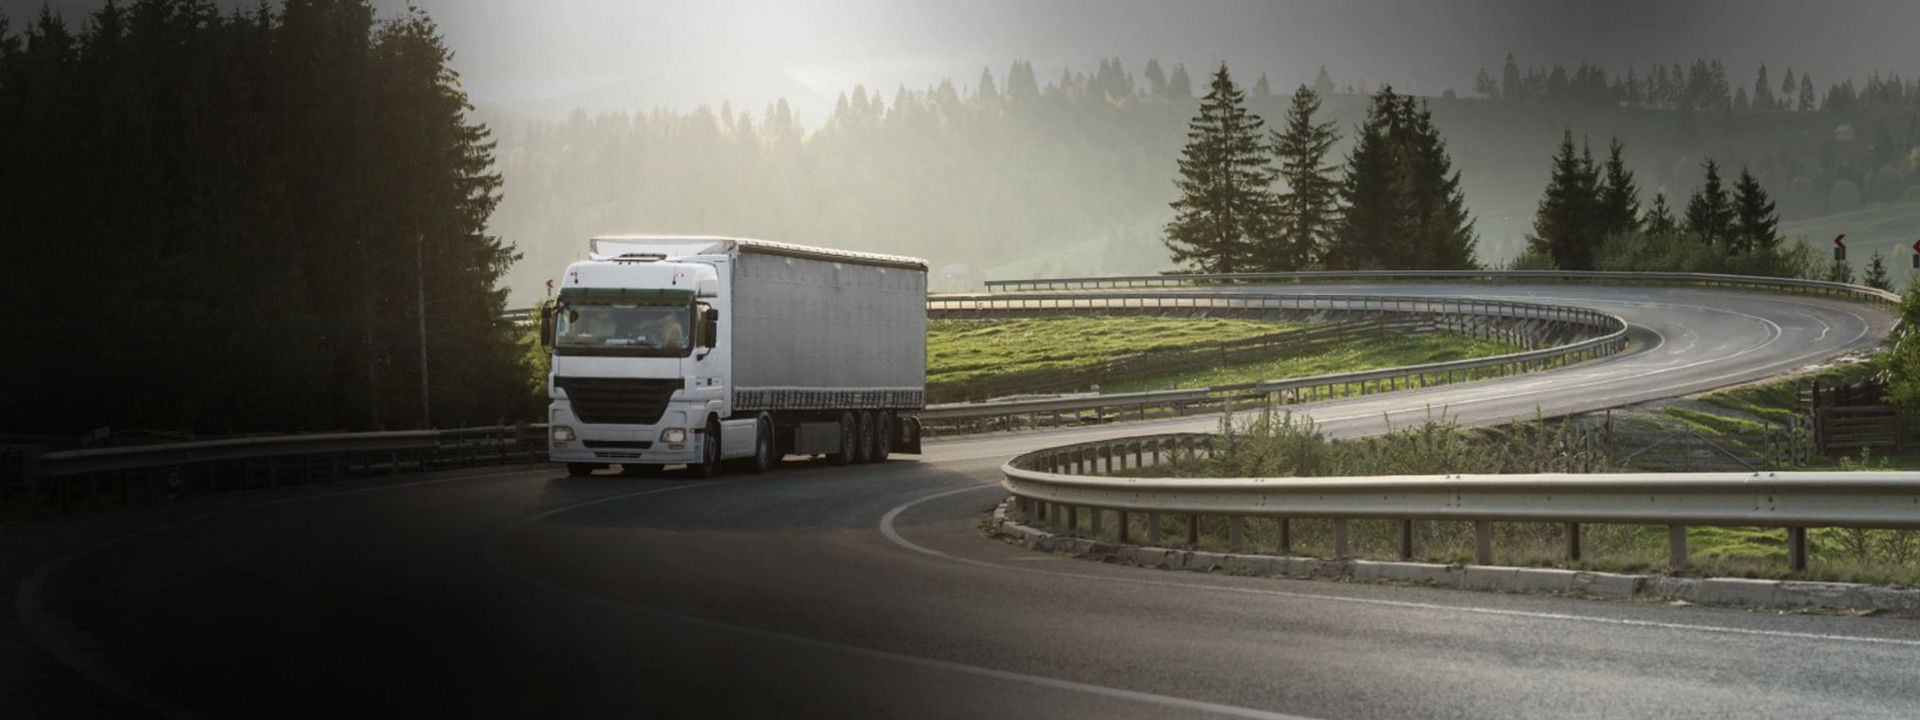 Αυτή η εικόνα δείχνει ένα φορτηγό μεγάλων αποστάσεων να κινείται σε περιφερειακό δρόμο με ευέλικτα ελαστικά φορτηγών Bridgestone.